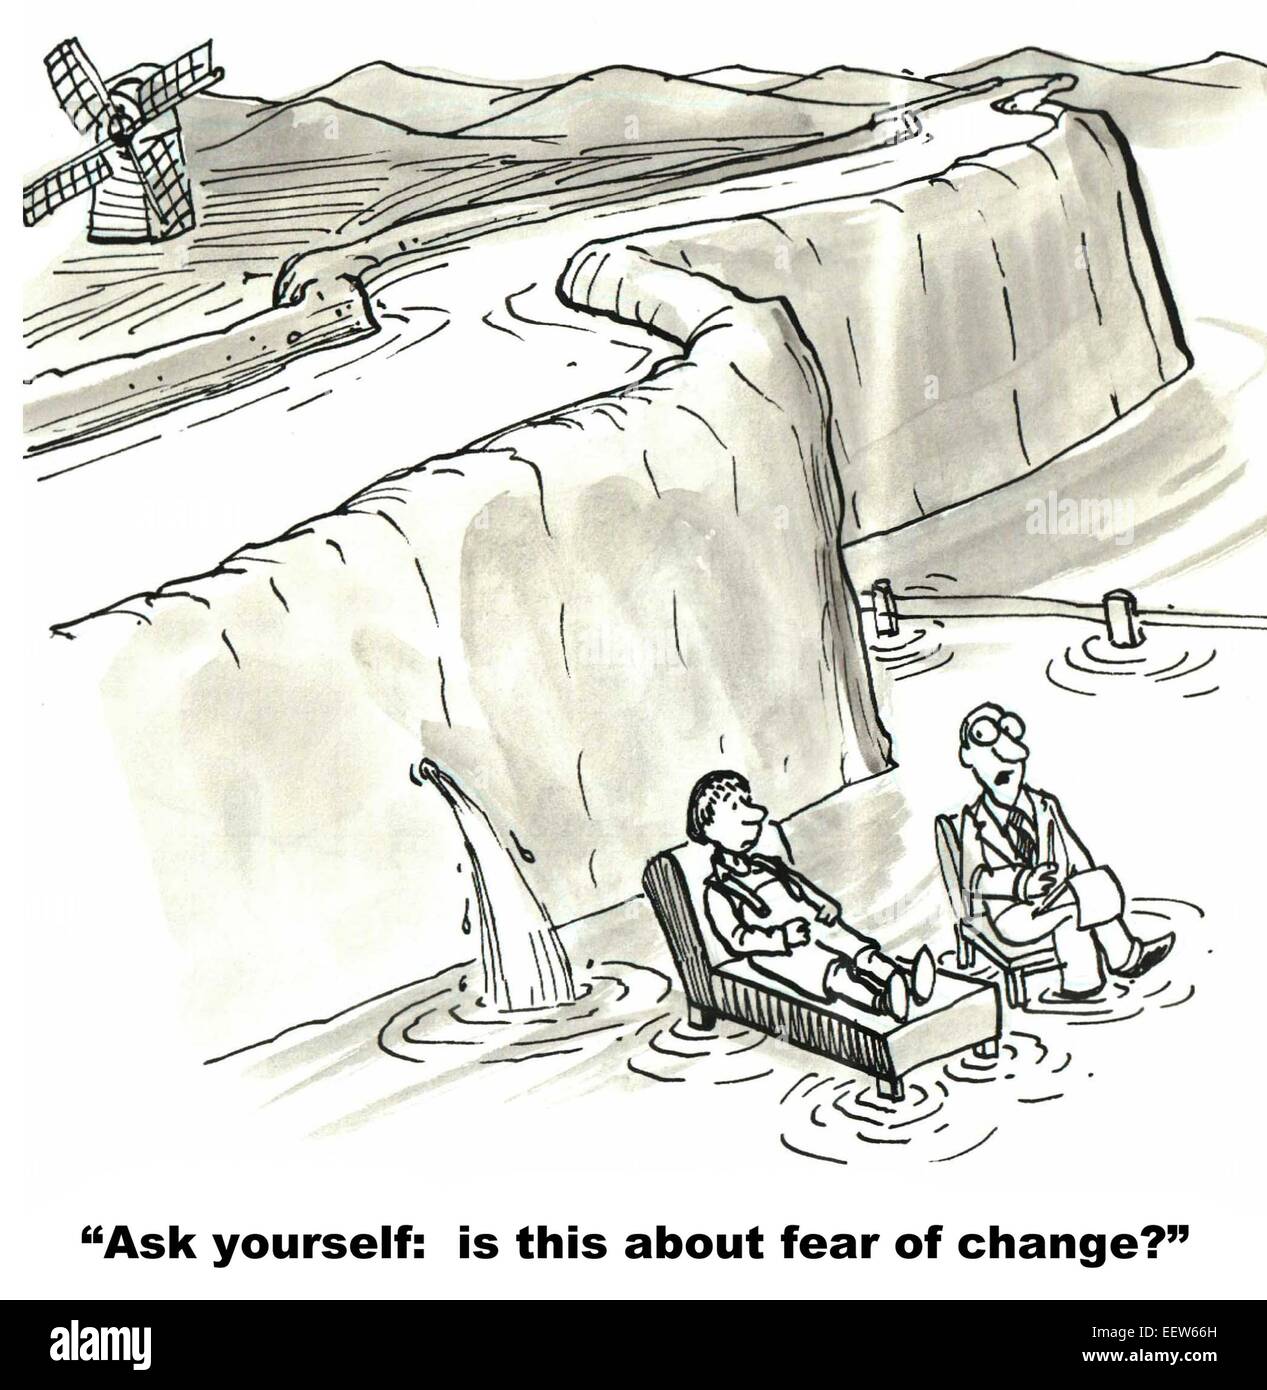 Caricature de garçon hollandais avec le thérapeute et thérapeute est demandé, est-ce à propos de la peur du changement. Banque D'Images